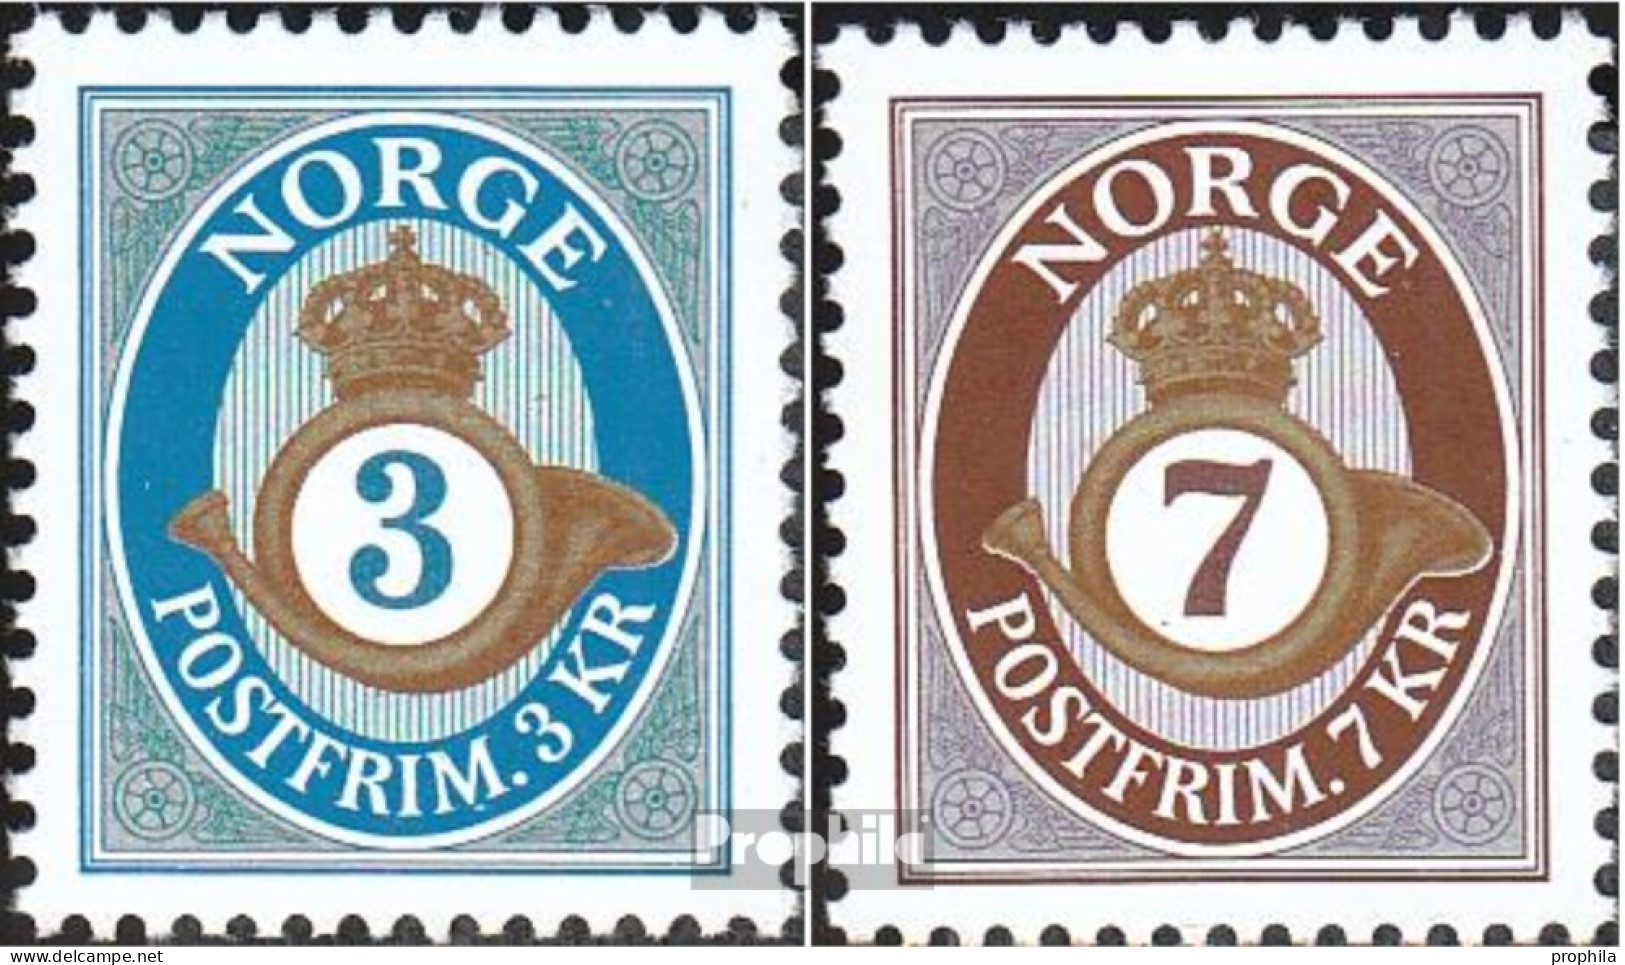 Norwegen 1529-1530 (kompl.Ausg.) Postfrisch 2005 Posthorn - Unused Stamps